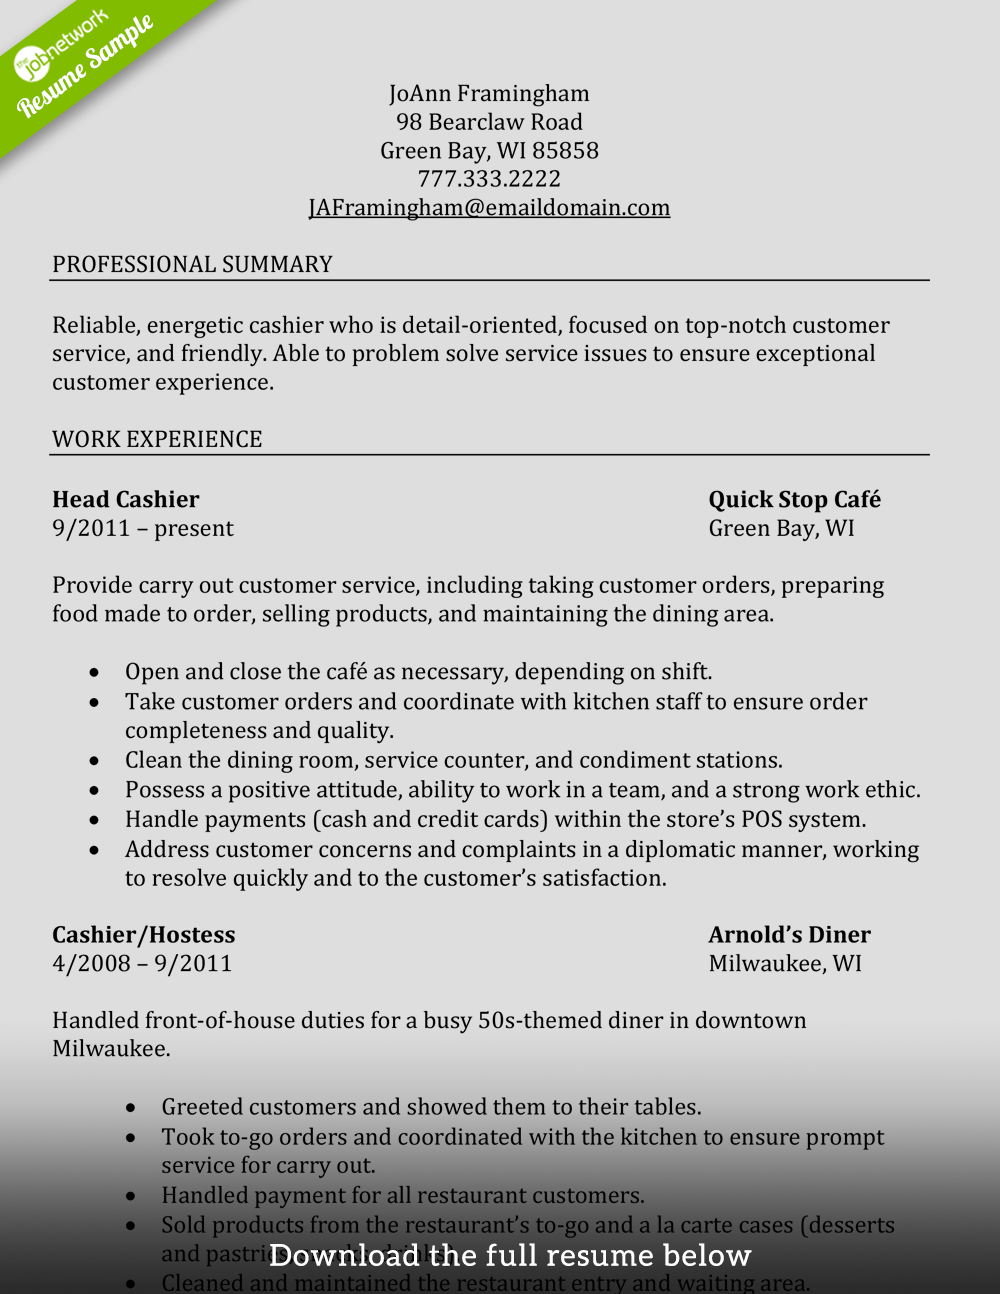 How To Write A Resume For A Job Cashier Resume Experienced Restaurant how to write a resume for a job|wikiresume.com